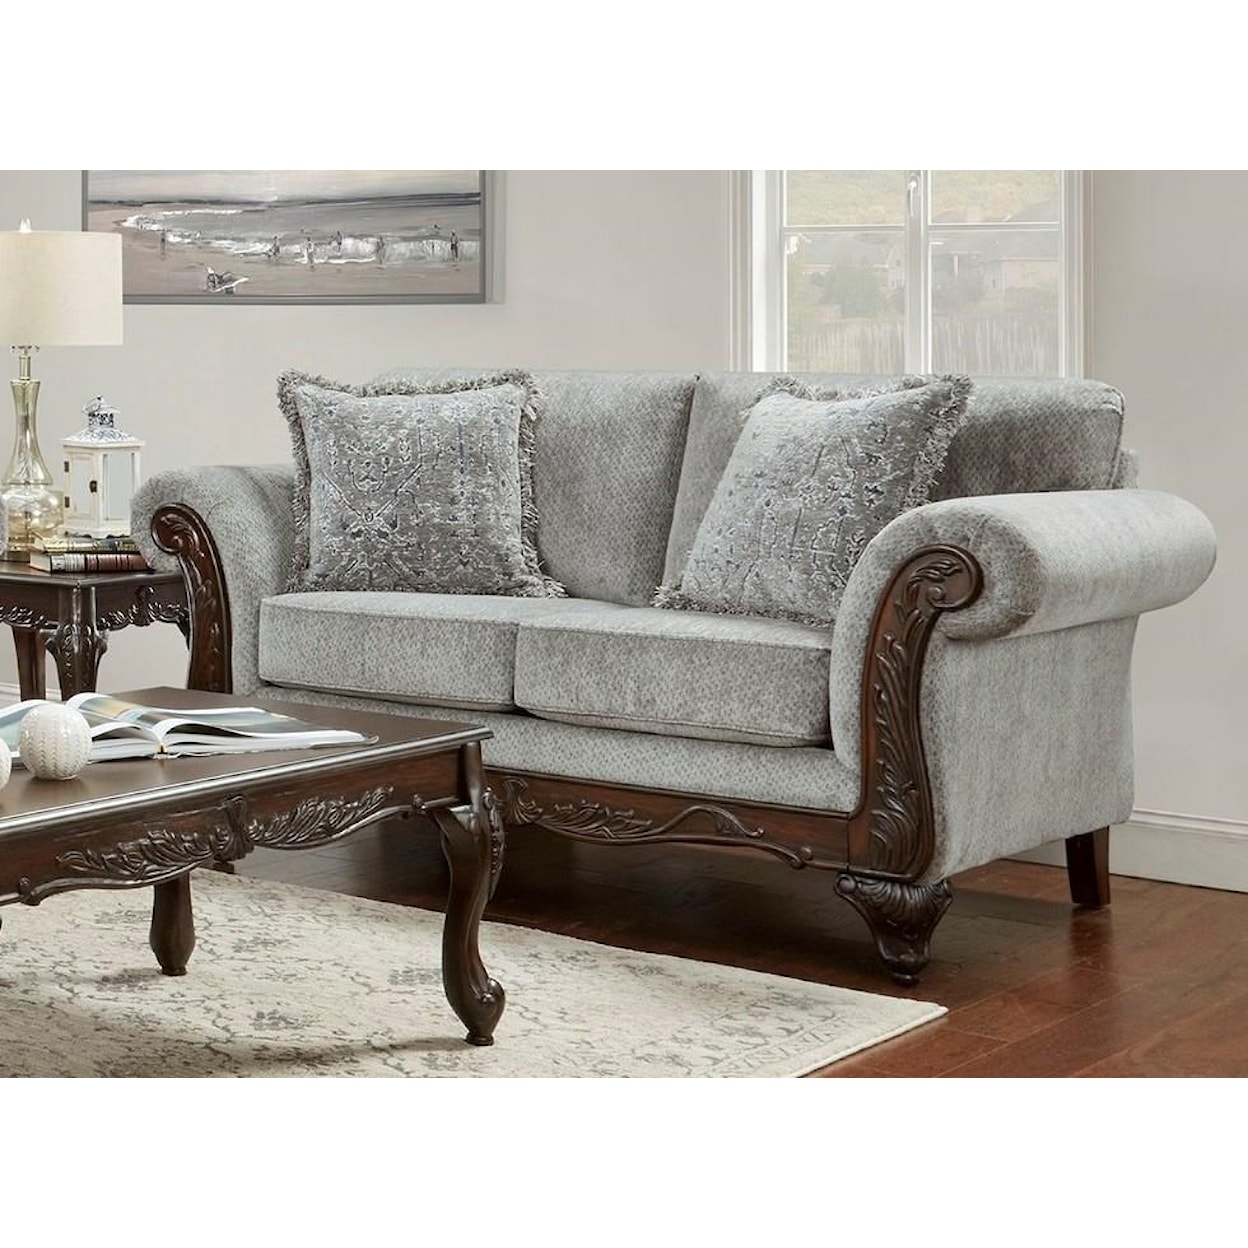 Affordable Furniture 8550 Emma Upholstered Love seat